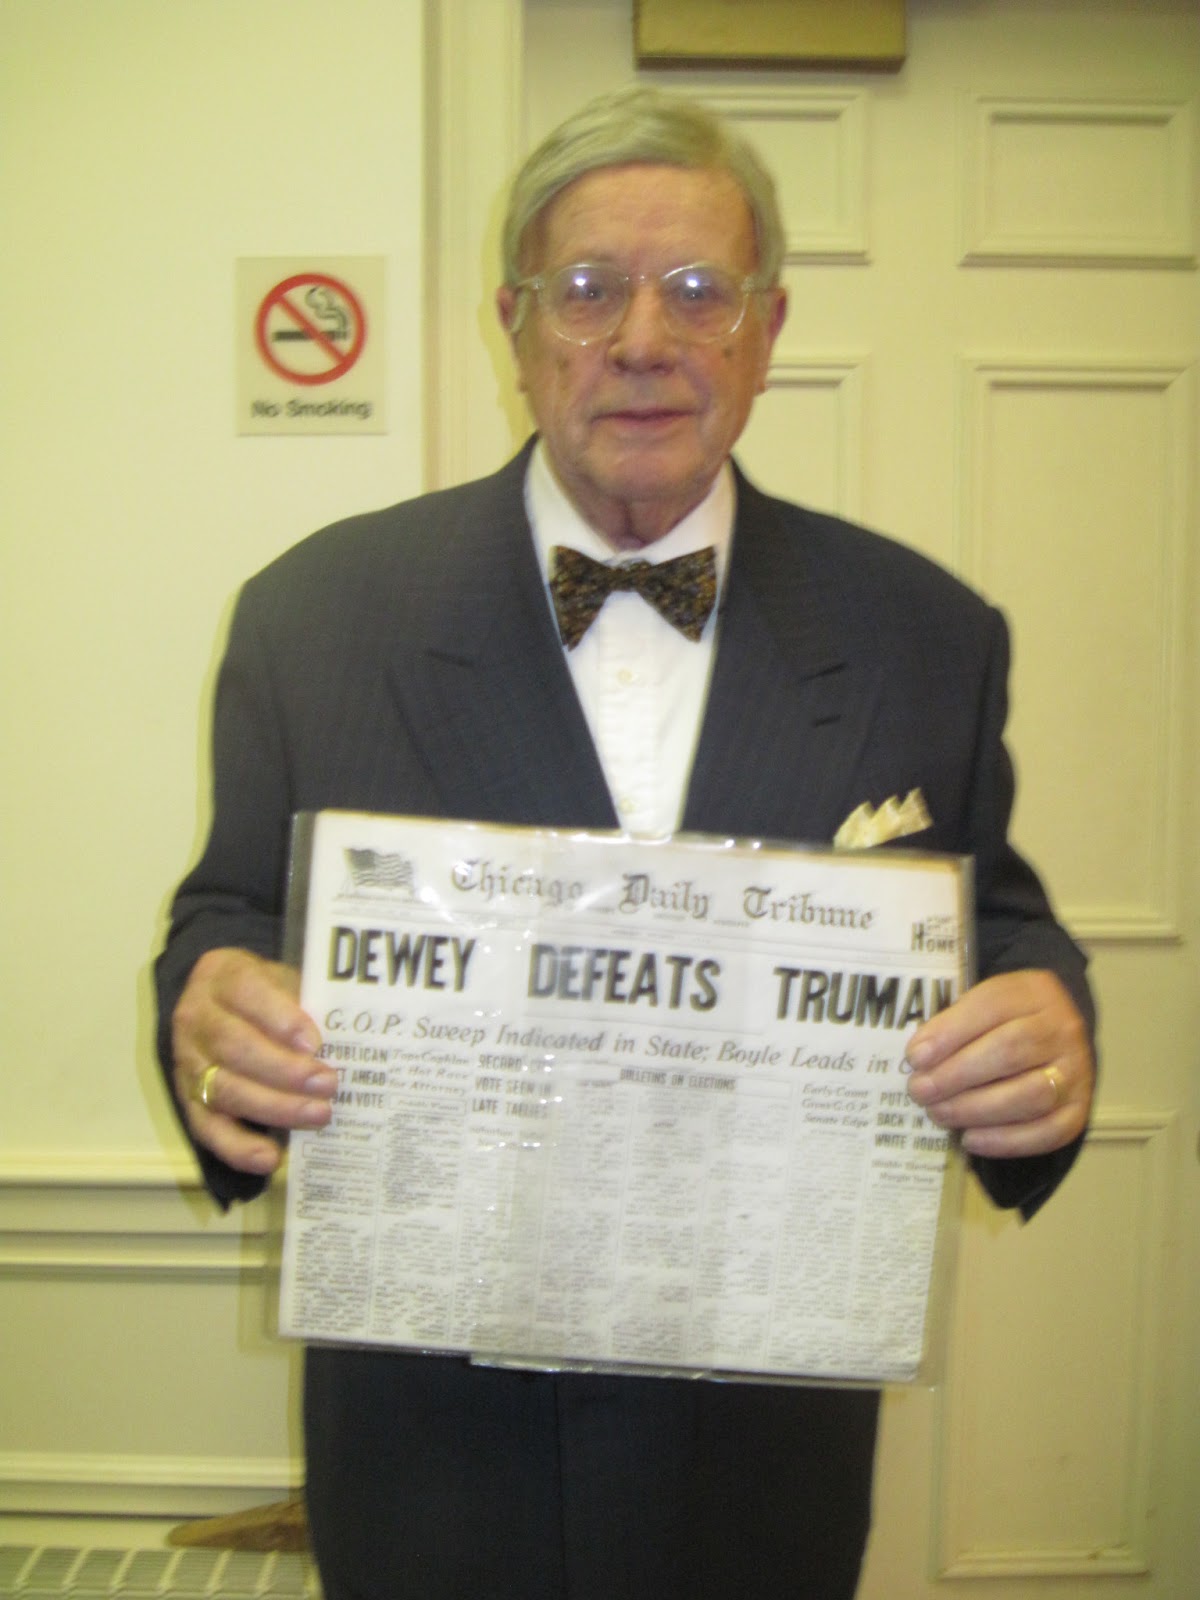 Dewey defeats truman book report